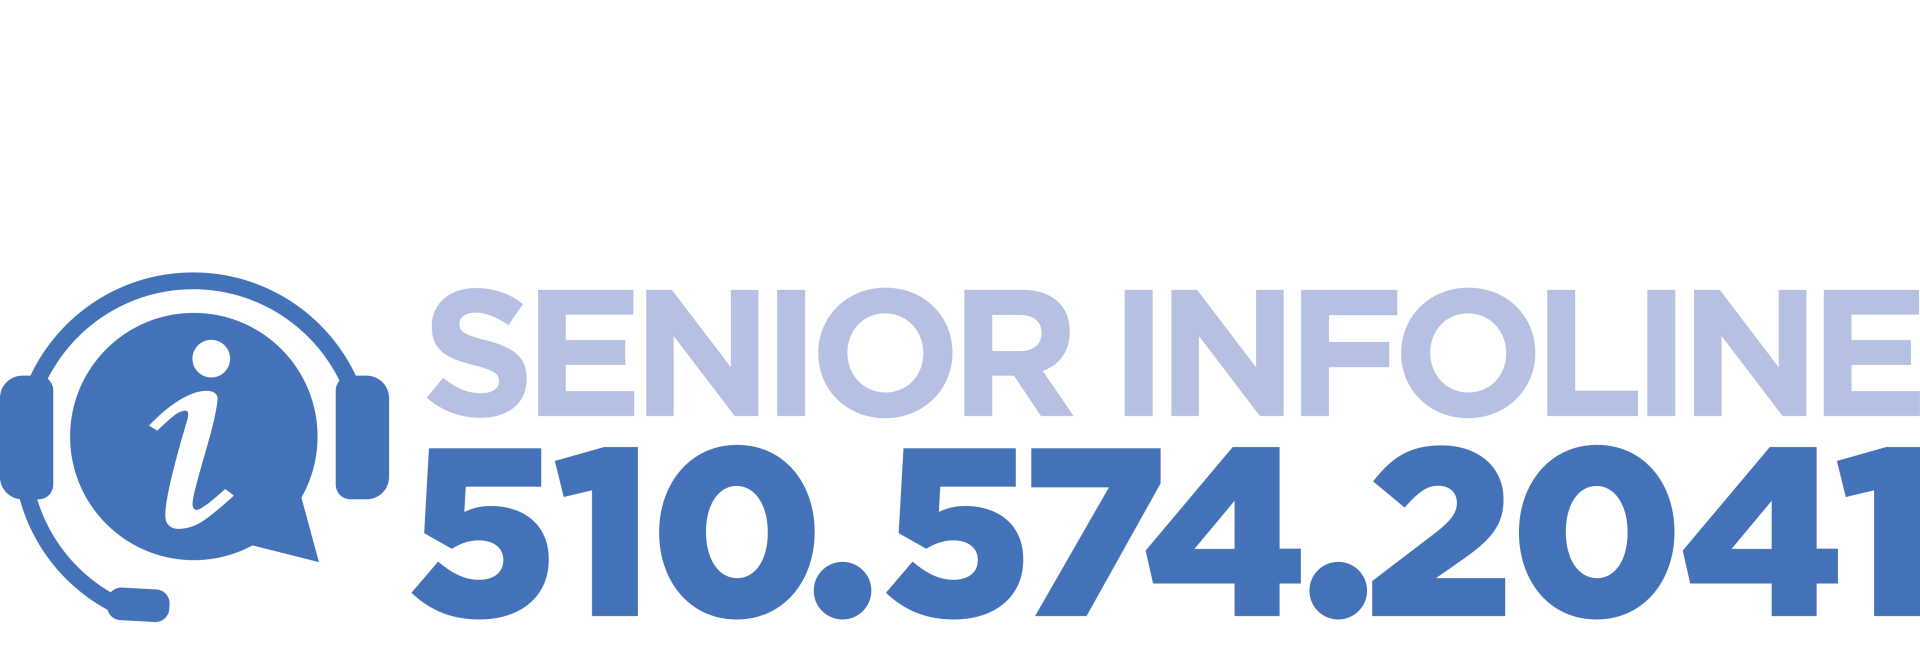 senior_infoline_logo